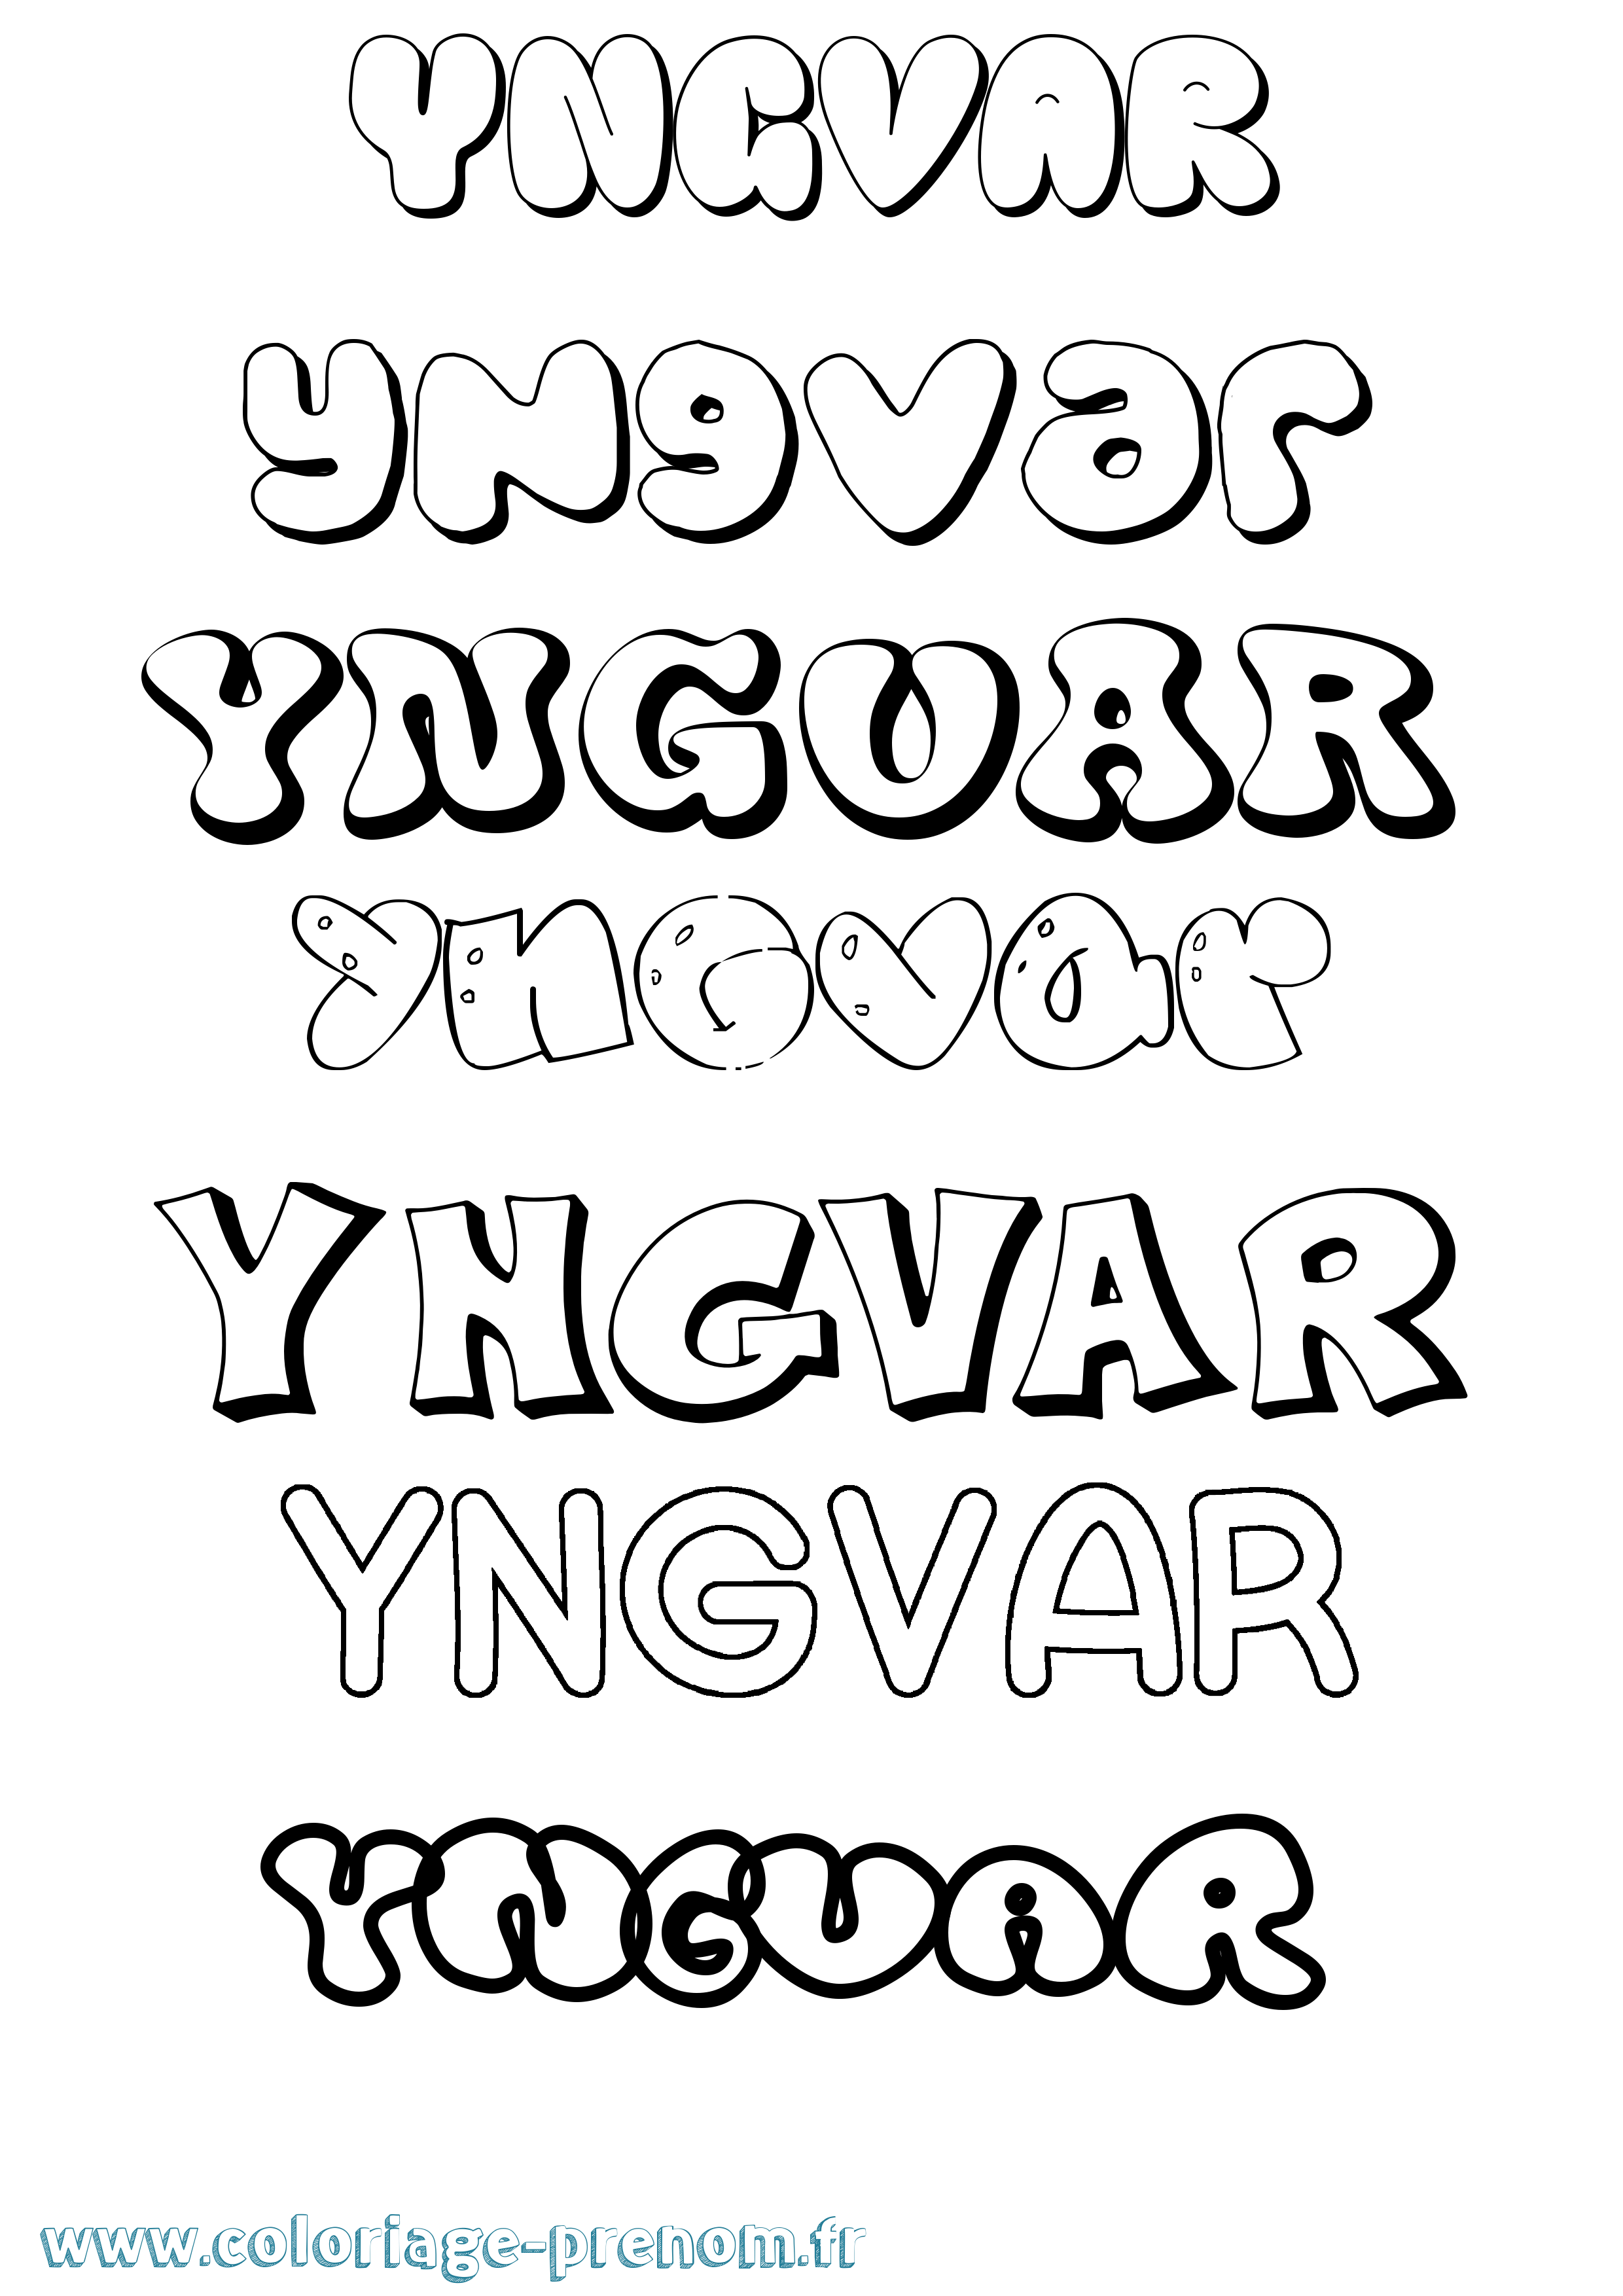 Coloriage prénom Yngvar Bubble